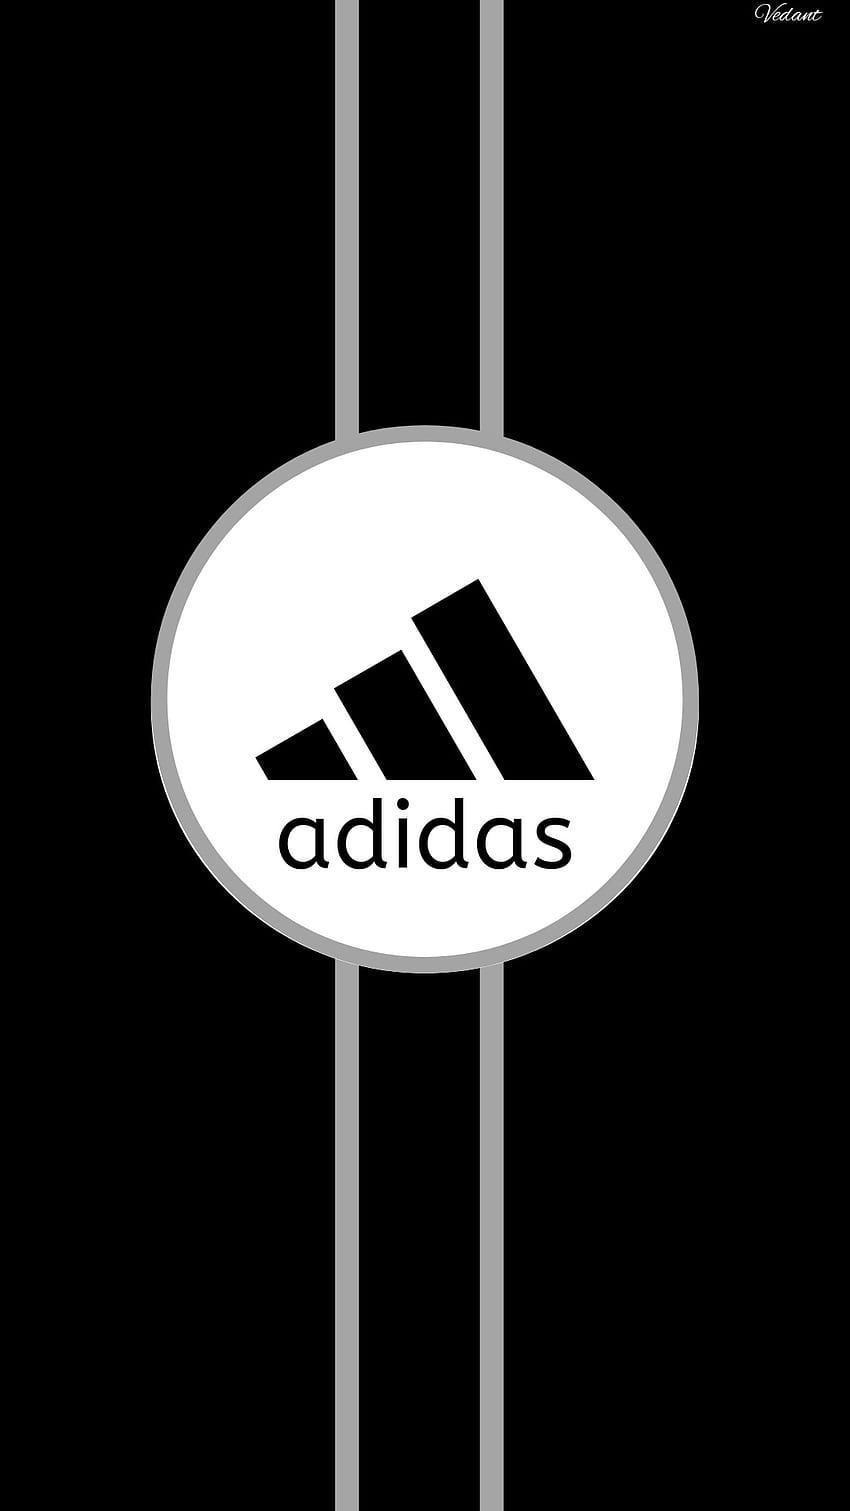 140 Adidas ý tưởng  hình nền iphone hình nền logo branding